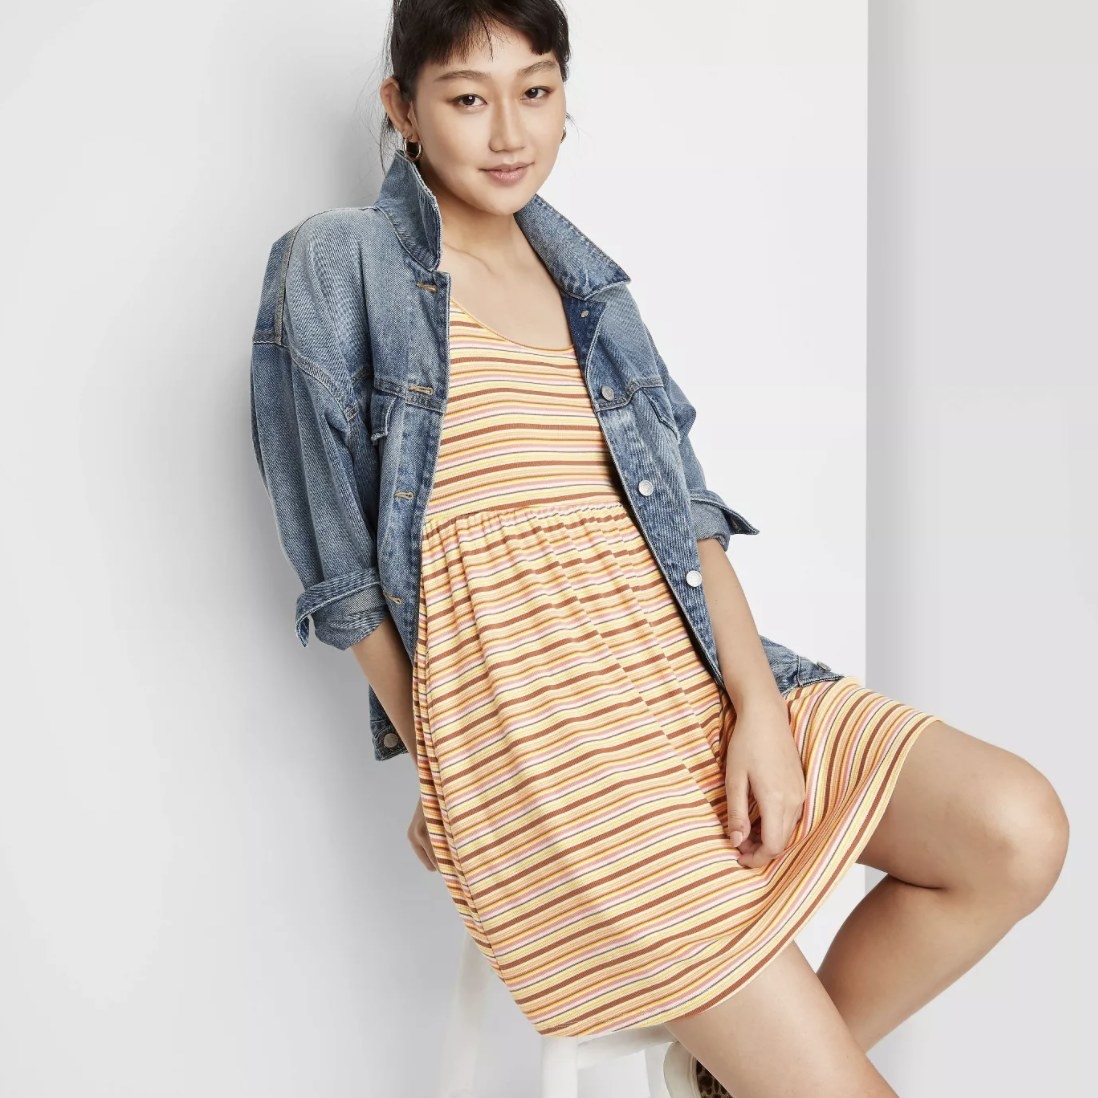 Model wearing the striped dress 